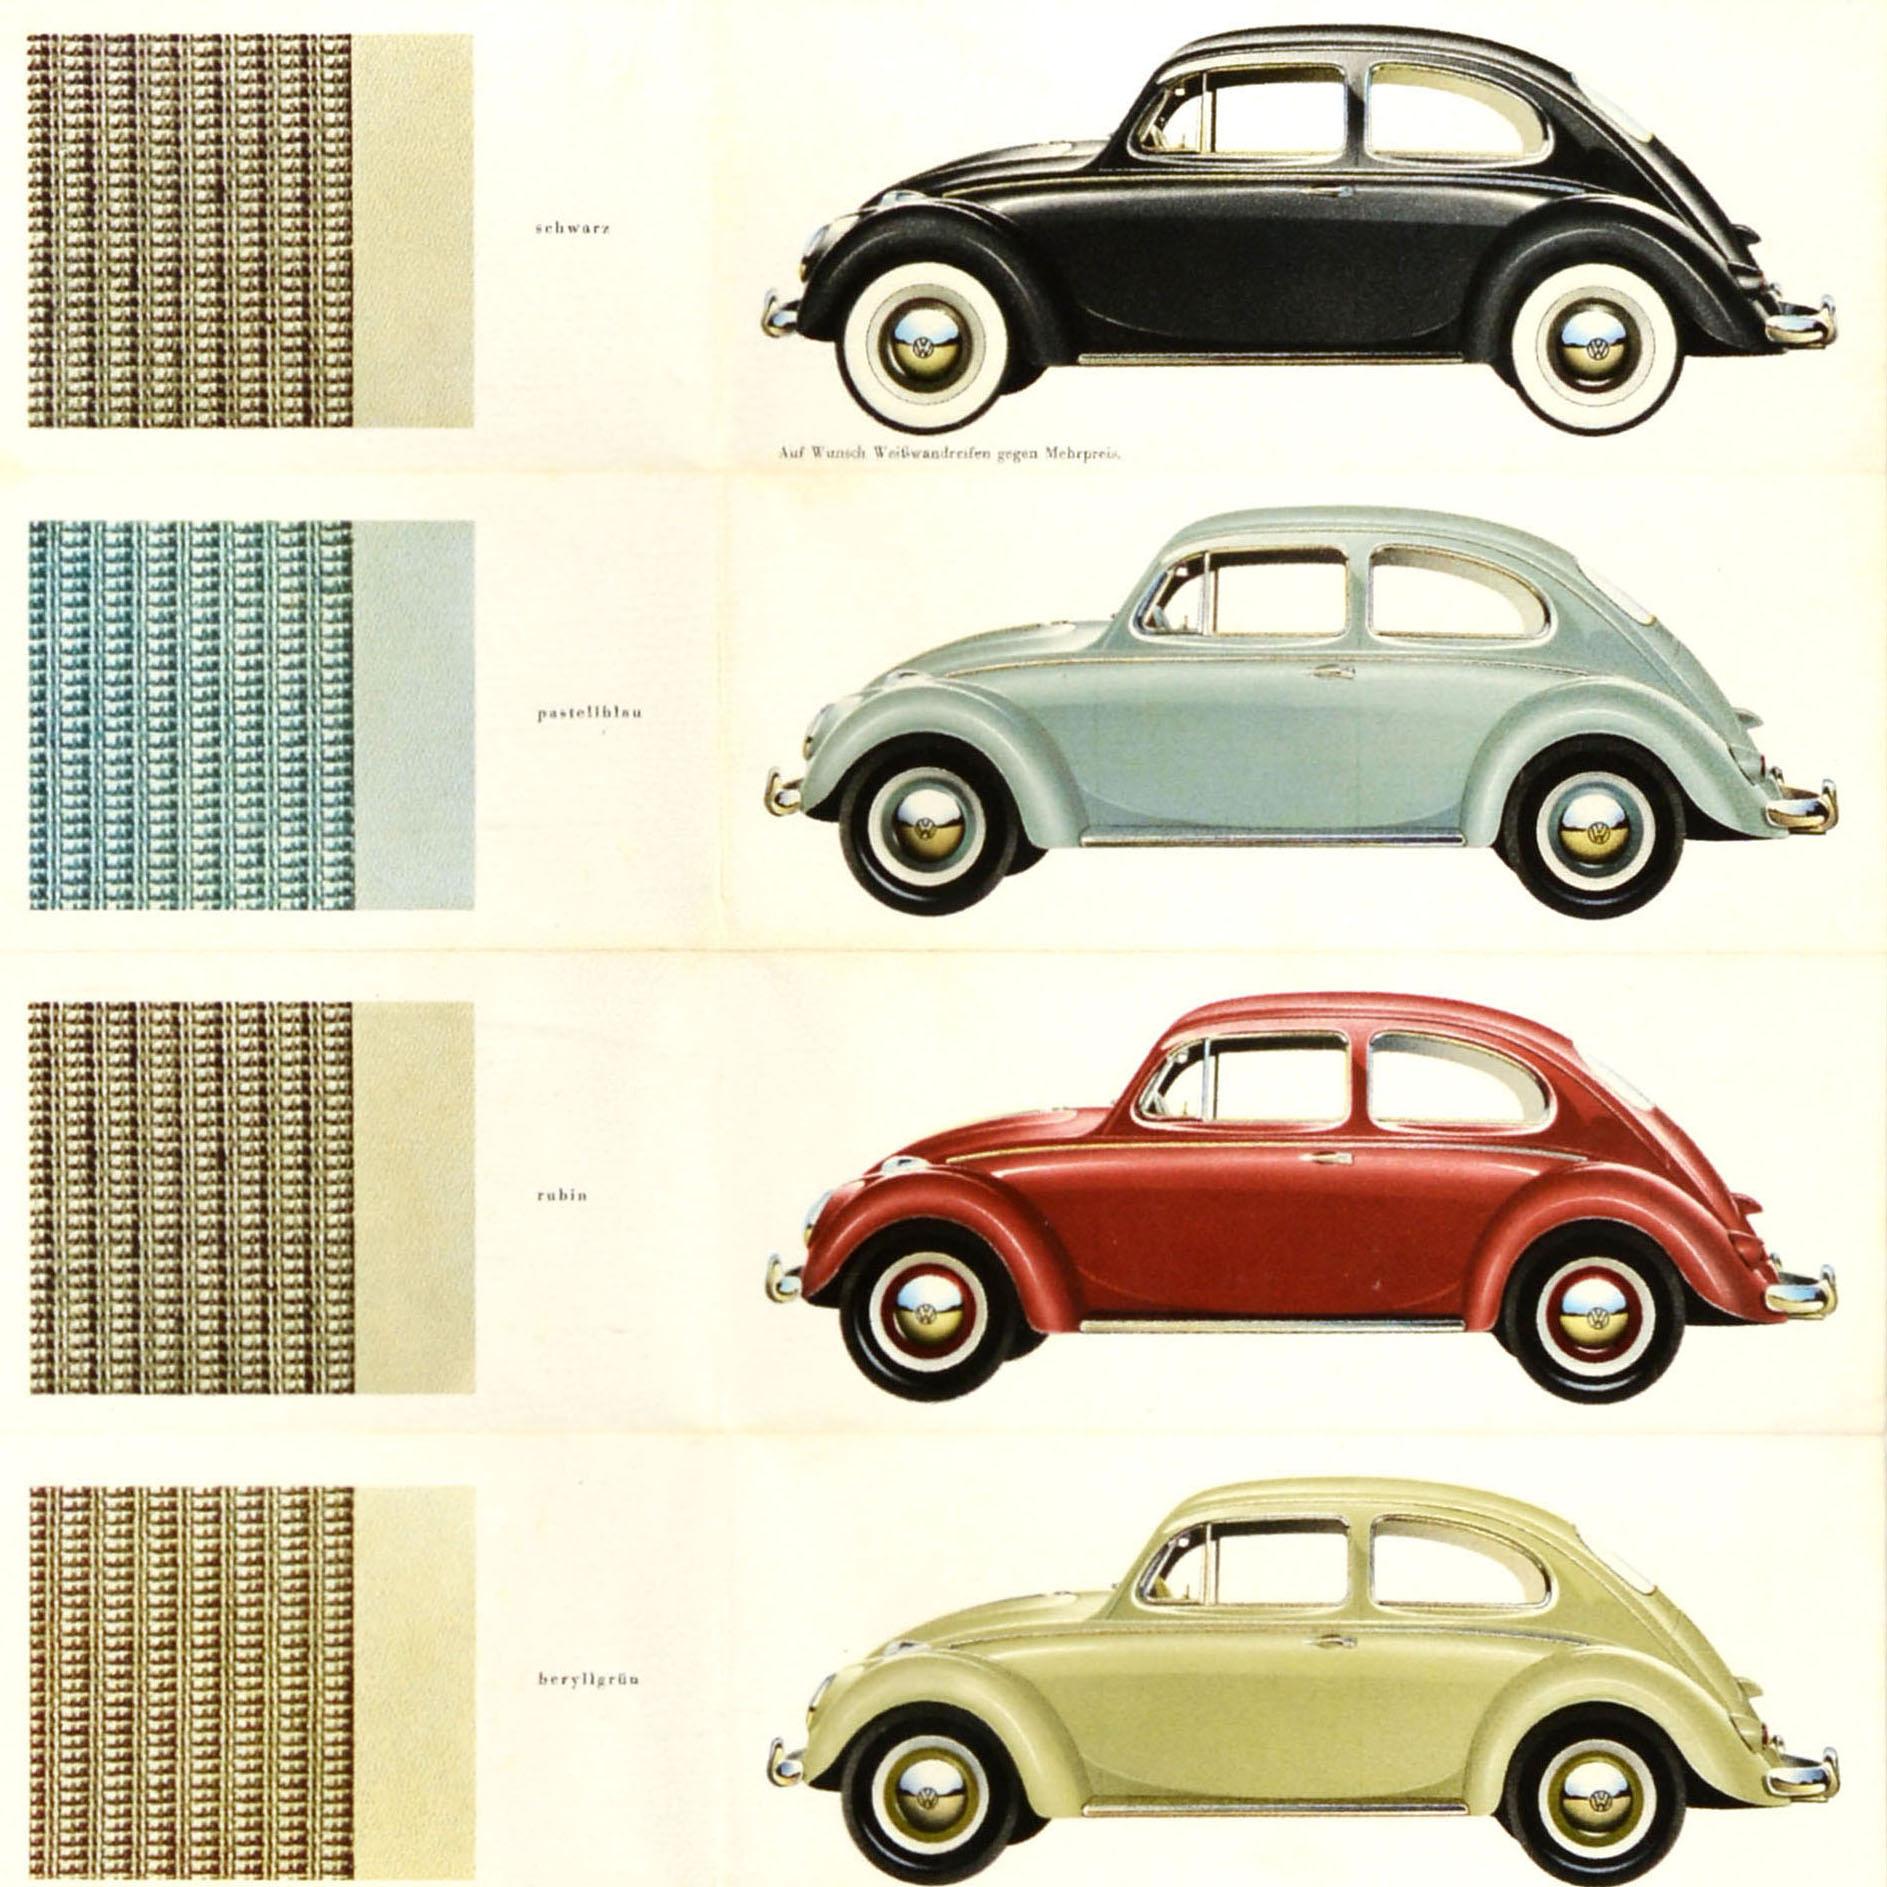 Affiche publicitaire originale de Volkswagen - VW Limousine - présentant des images de la voiture dans différentes couleurs dont le noir, le bleu pâle, le rouge rubis et le blanc perle avec une note - Auf wunsch Weißwandreifen gegen Mehrpreis /